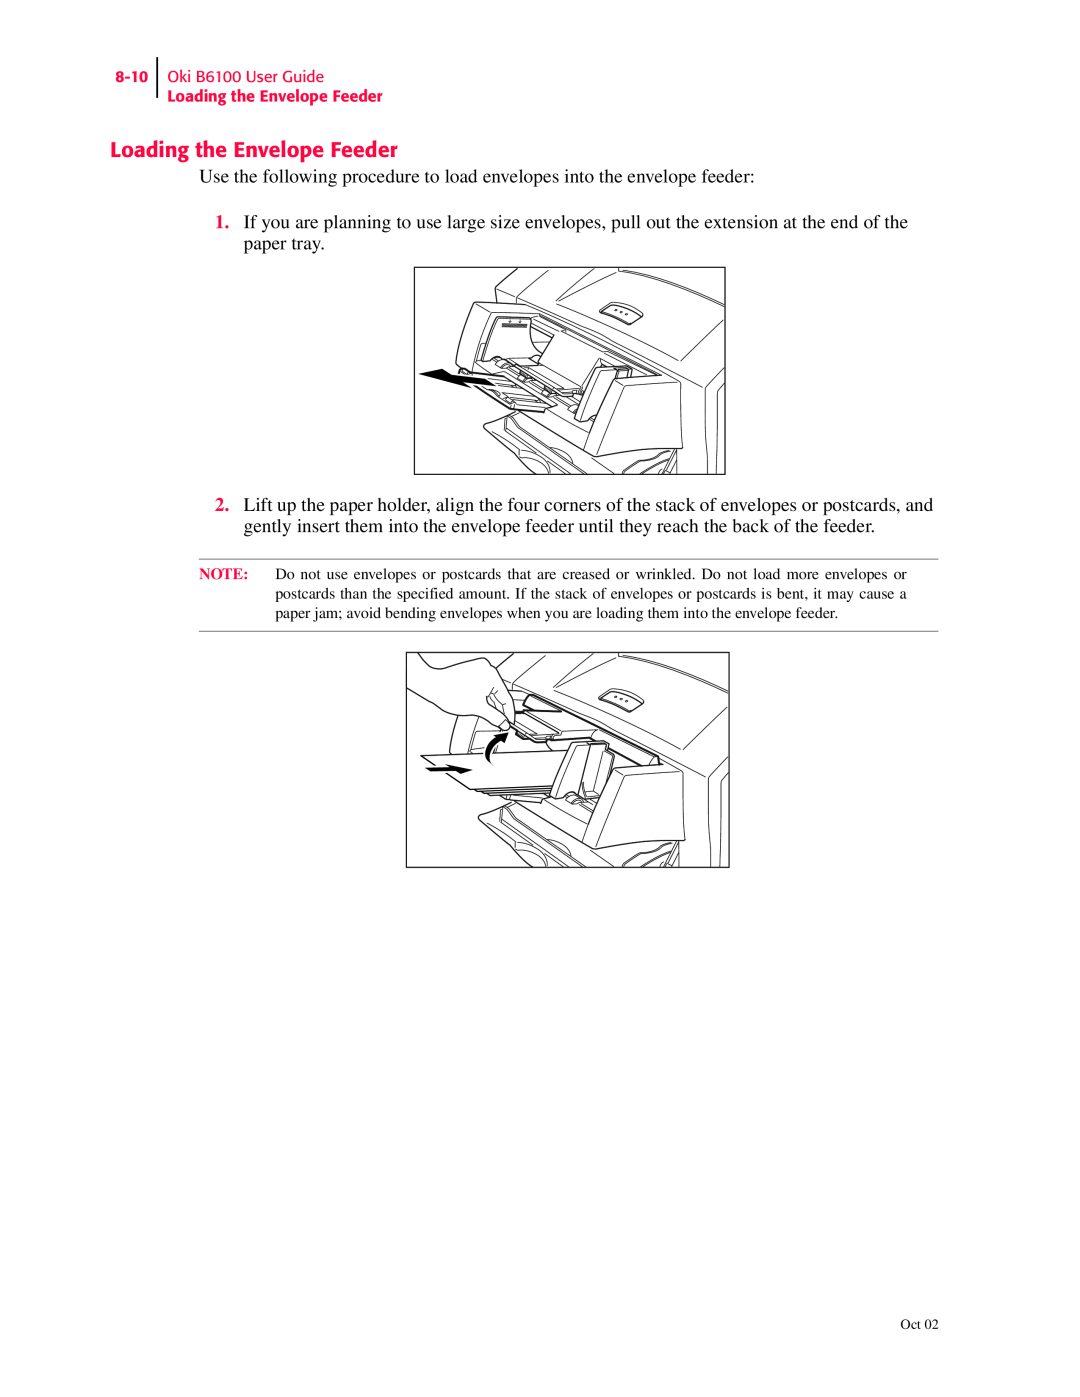 Oki manual Oki B6100 User Guide Loading the Envelope Feeder 